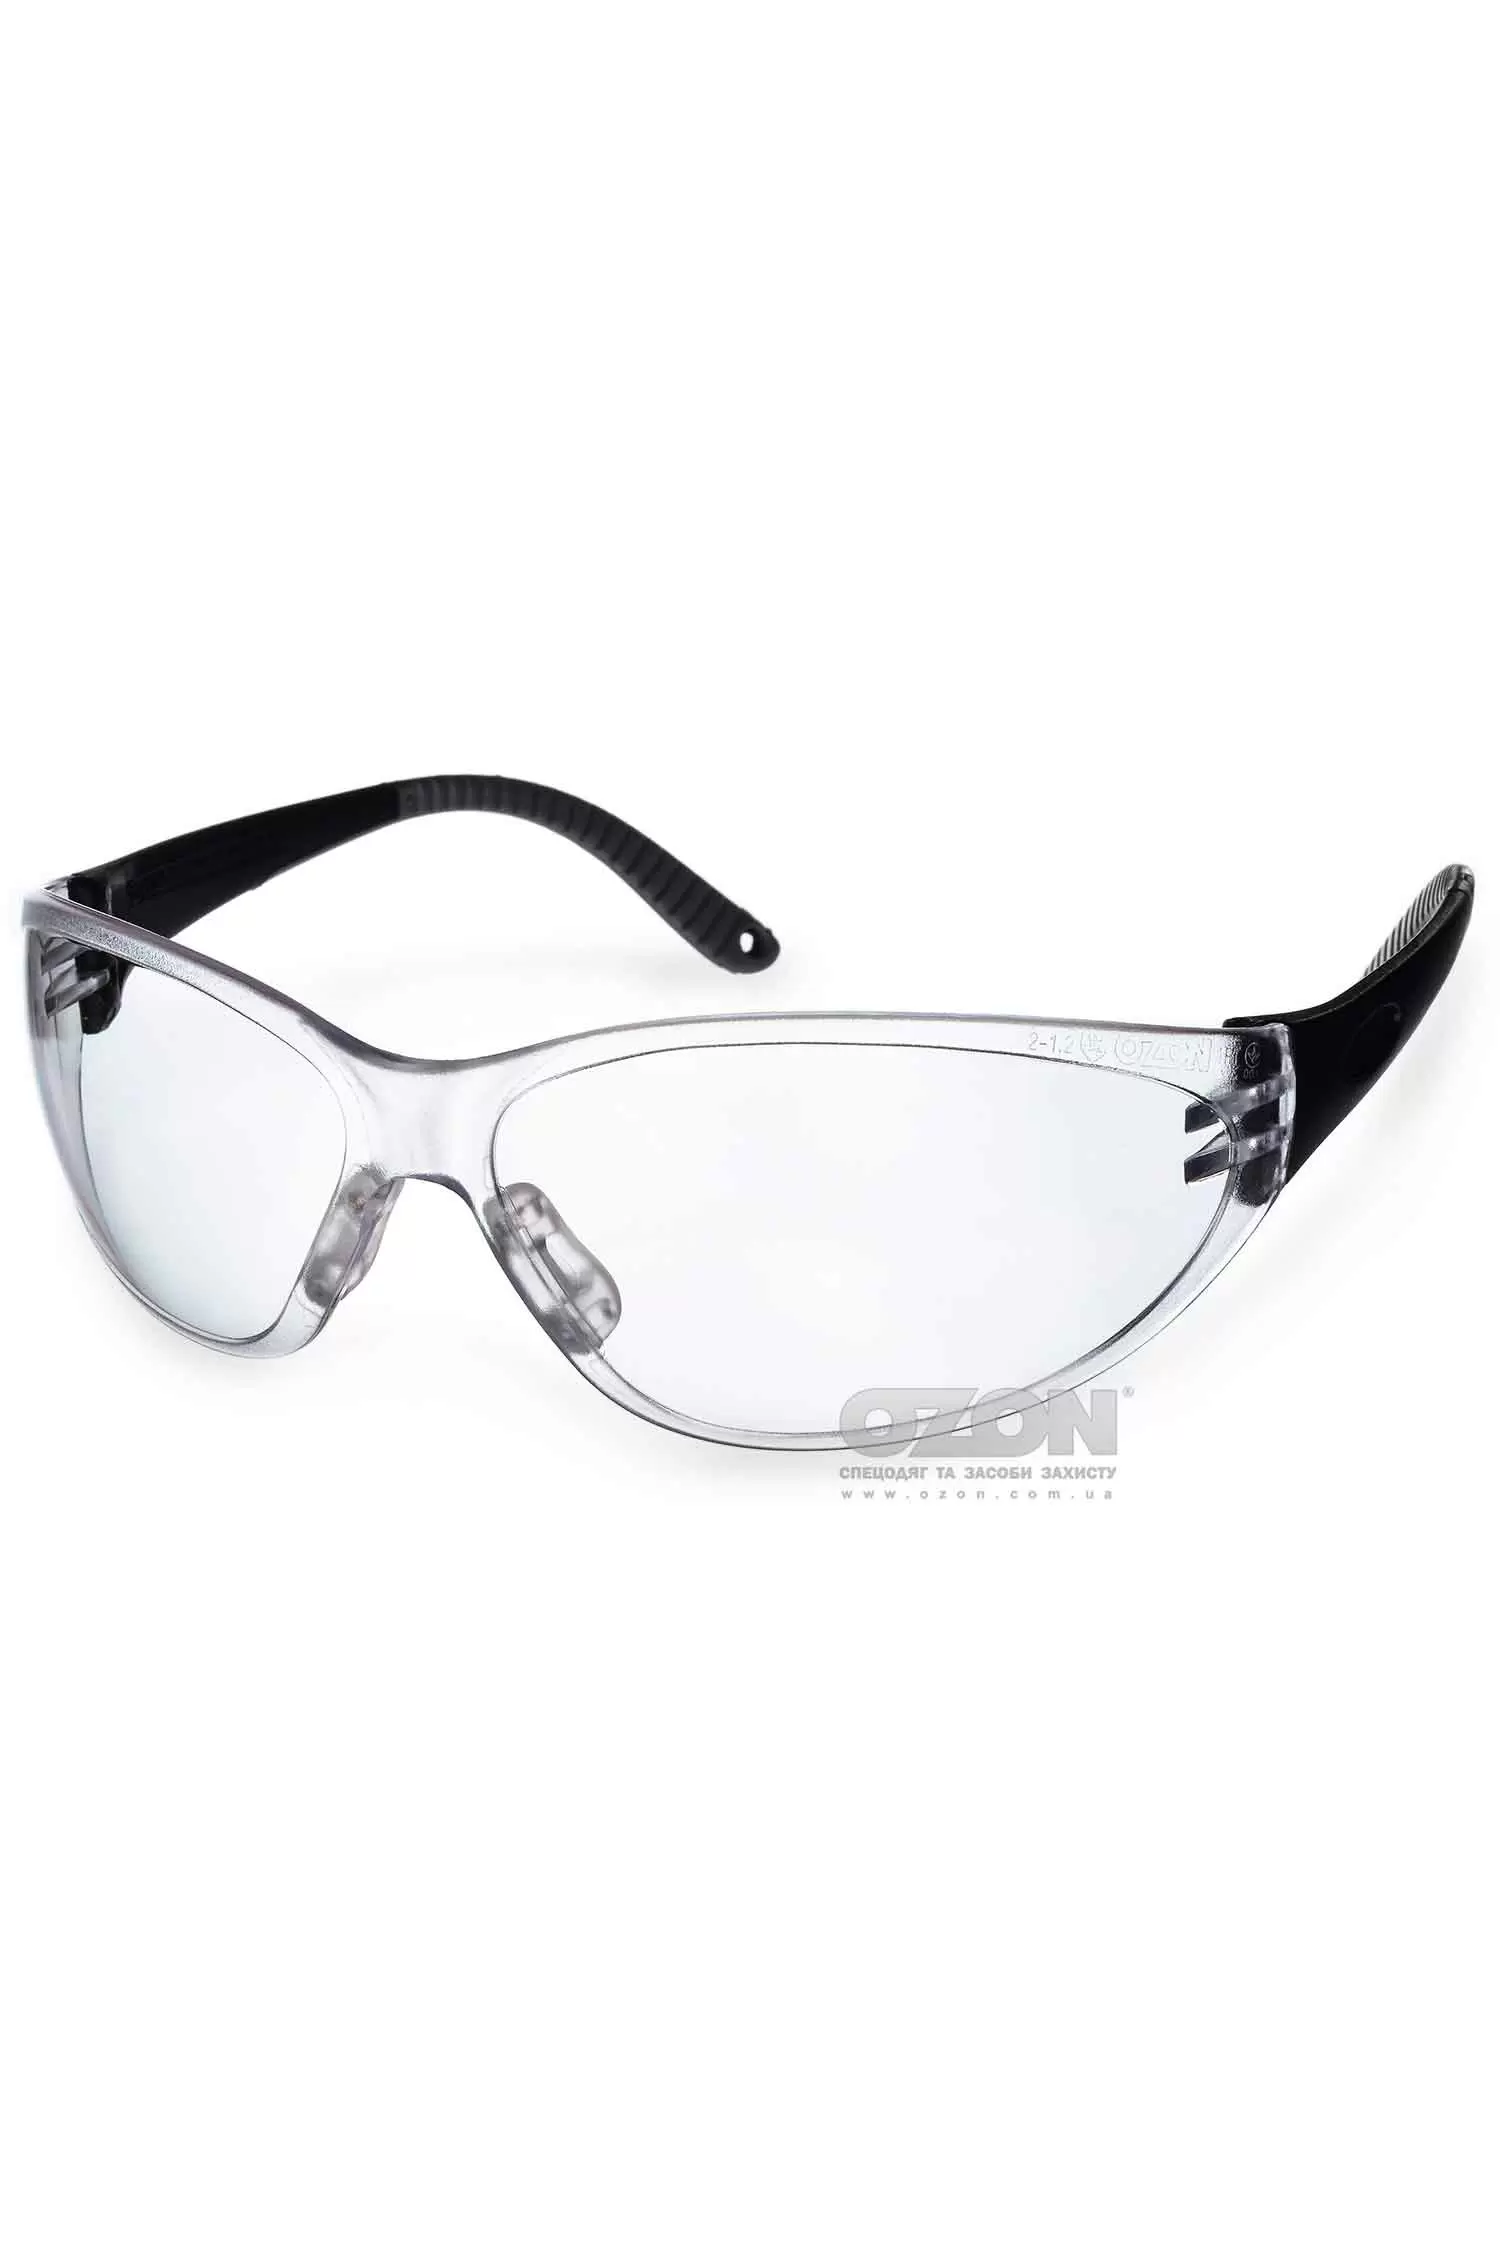 Защитные очки OZON™ 7-033 A/F - Фото 1